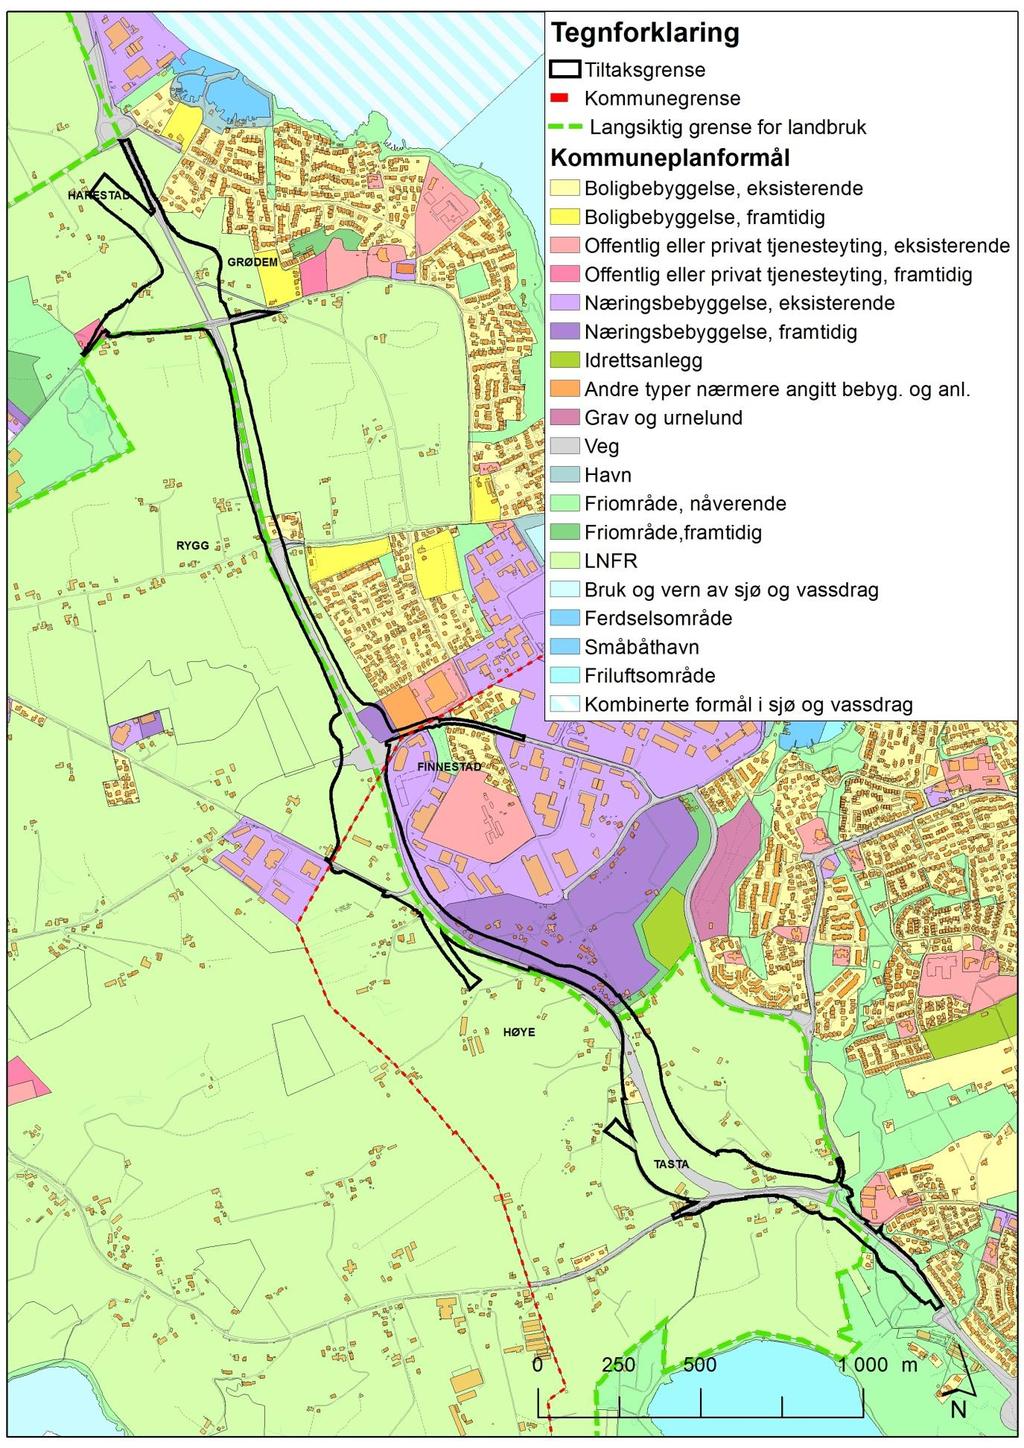 Lokal og regional utvikling 22 Figur 13: Kommuneplankart for